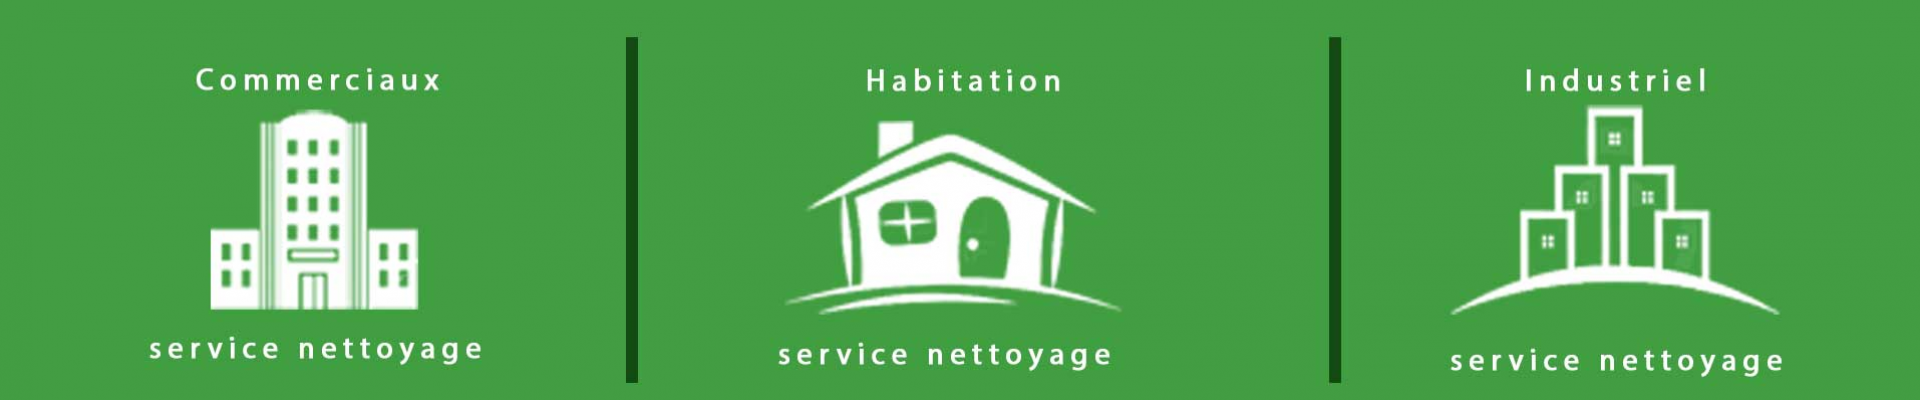 menage-mathile-habitation-service-nettoyage.png